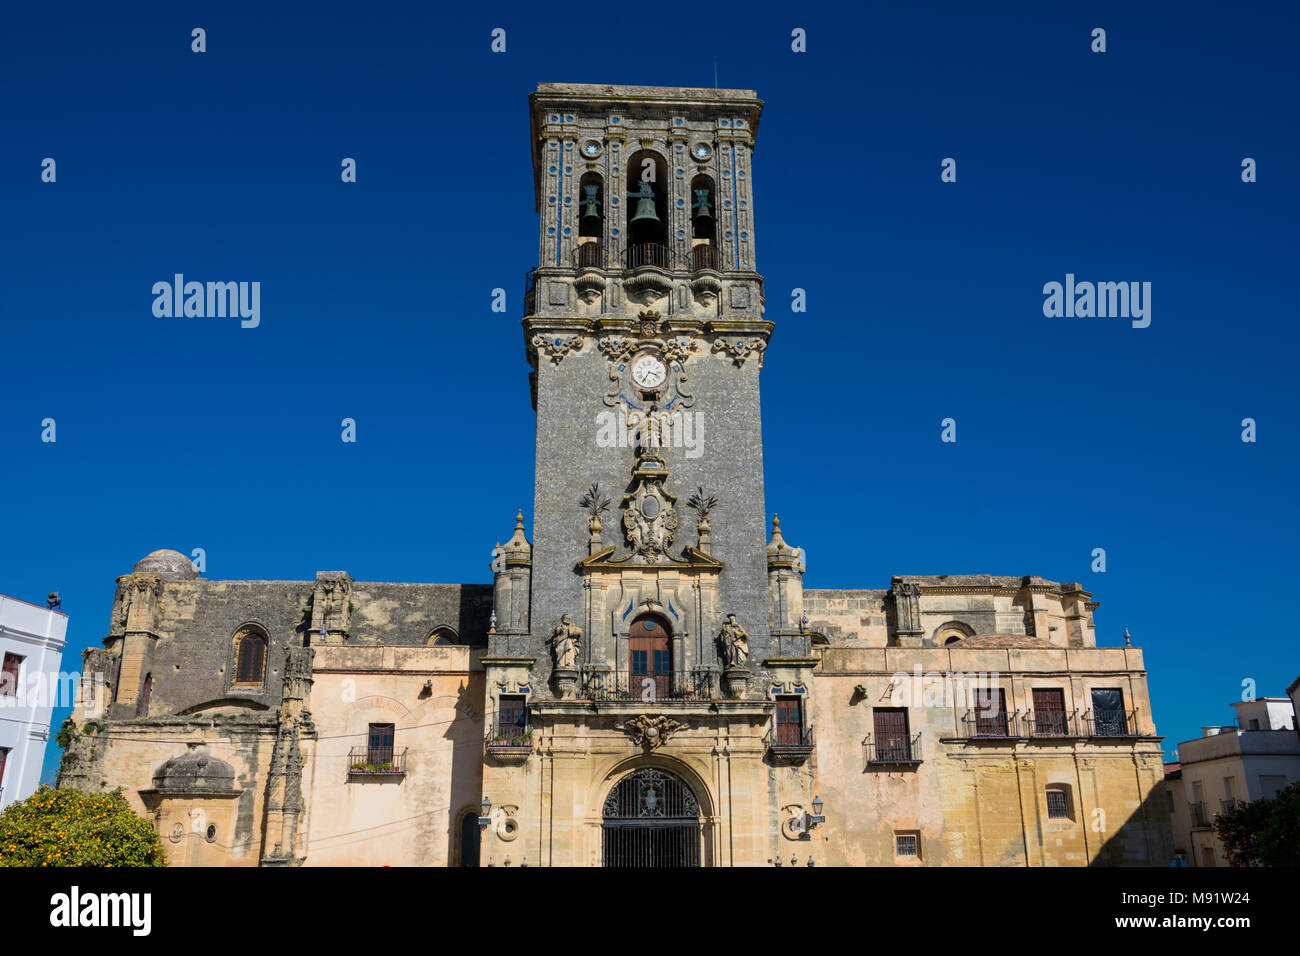 Église de Santa Maria de l'Ascension (Eglise de Santa Maria de la Asuncion). Arcos de la Frontera, Espagne Banque D'Images